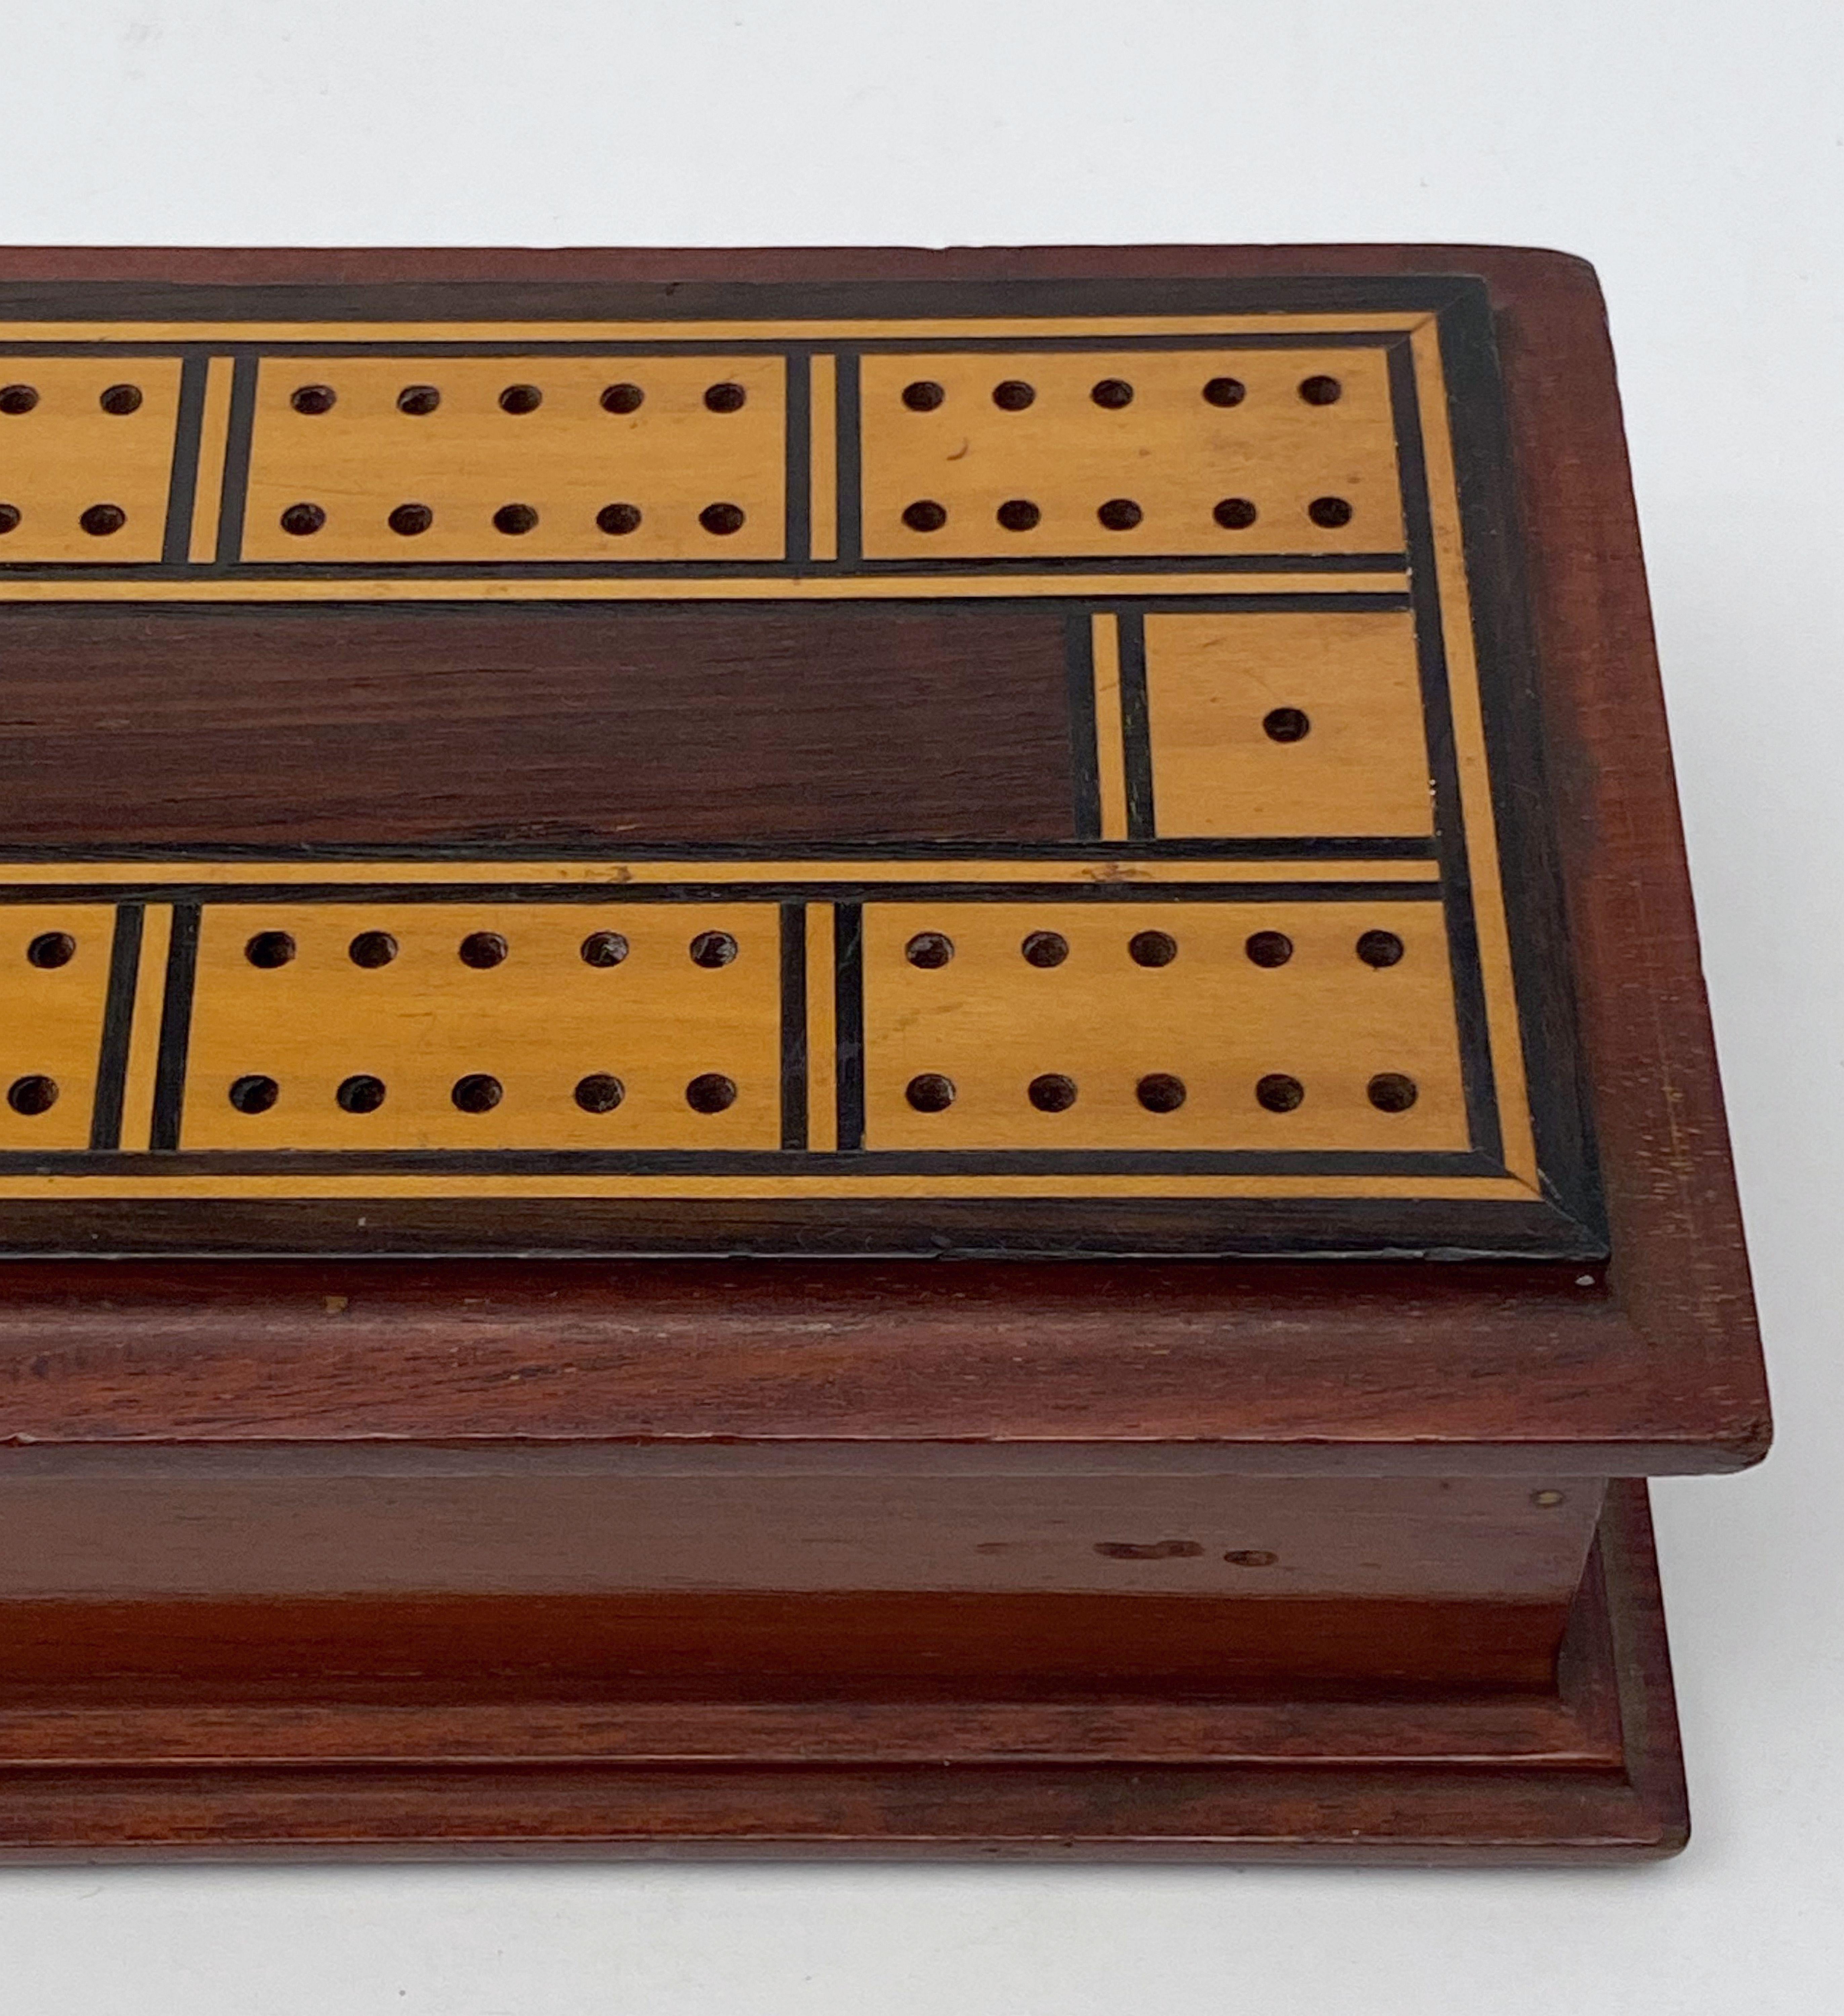 English Cribbage Board or Game Box of Inlaid Mahogany 10